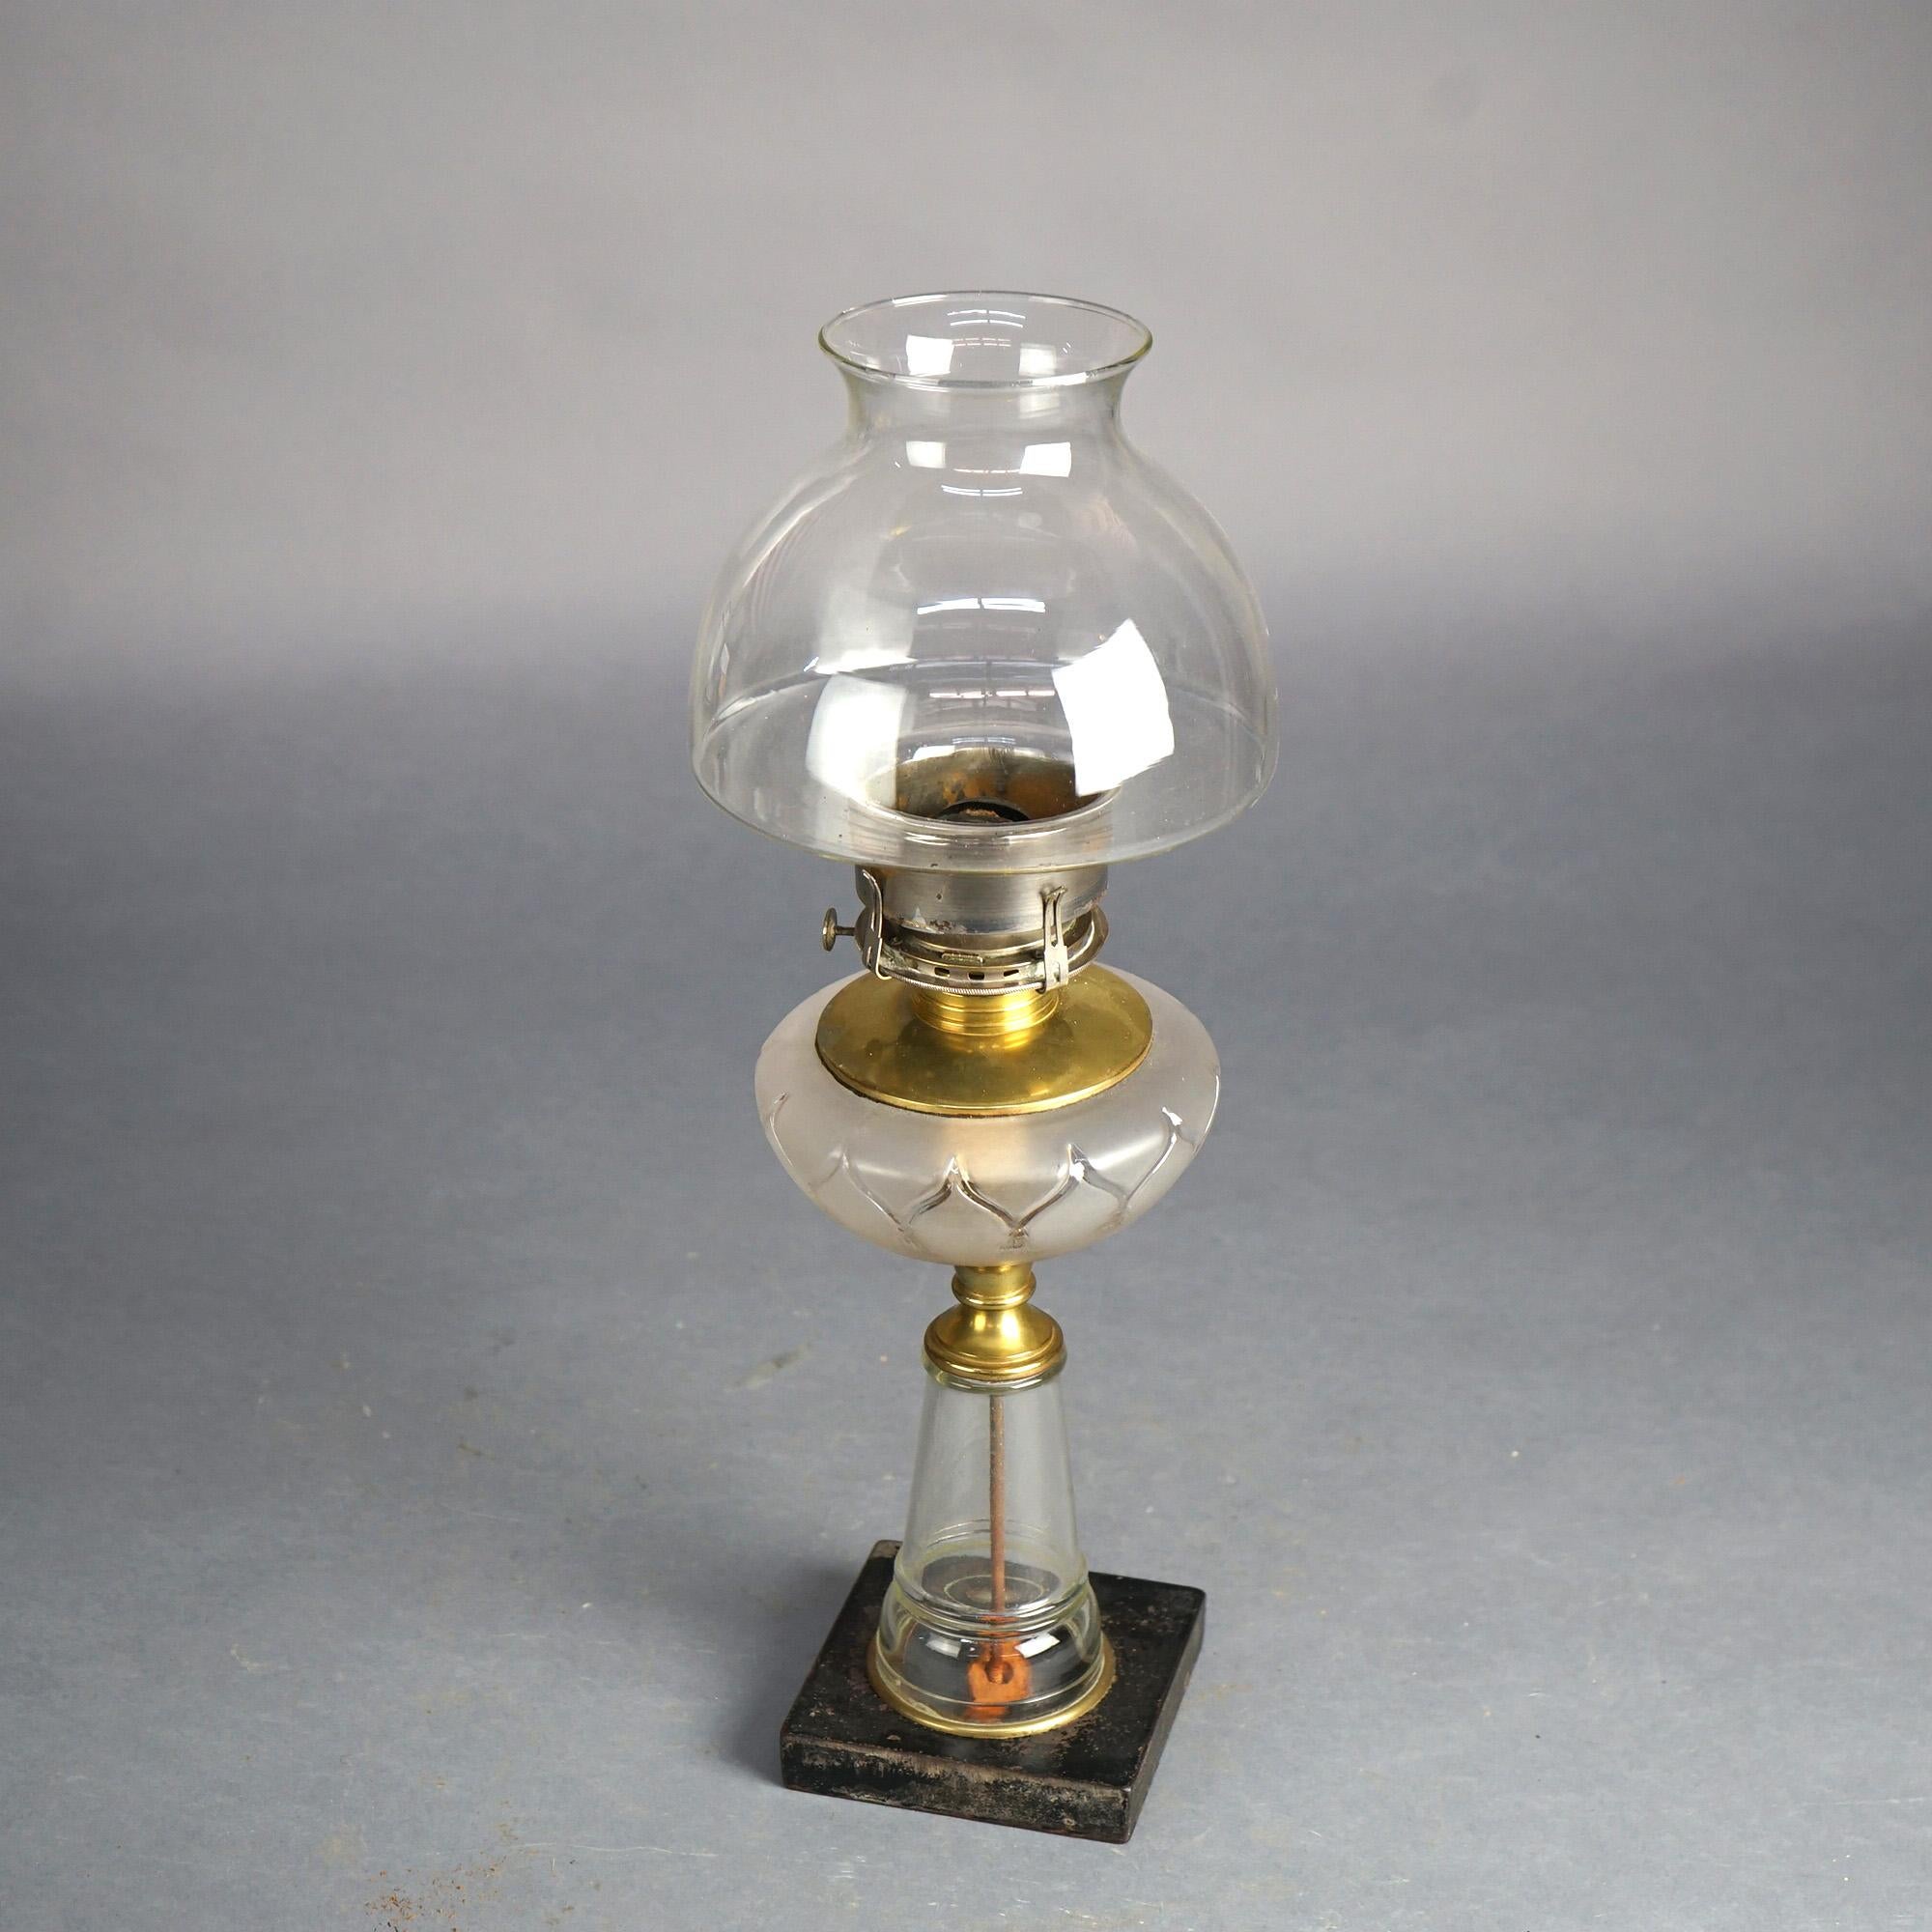 Antike Öllampe mit Glasfuß und Schirm, um 1890, antik

Maße: 19,75''H x 6,75''B x 6,75''D